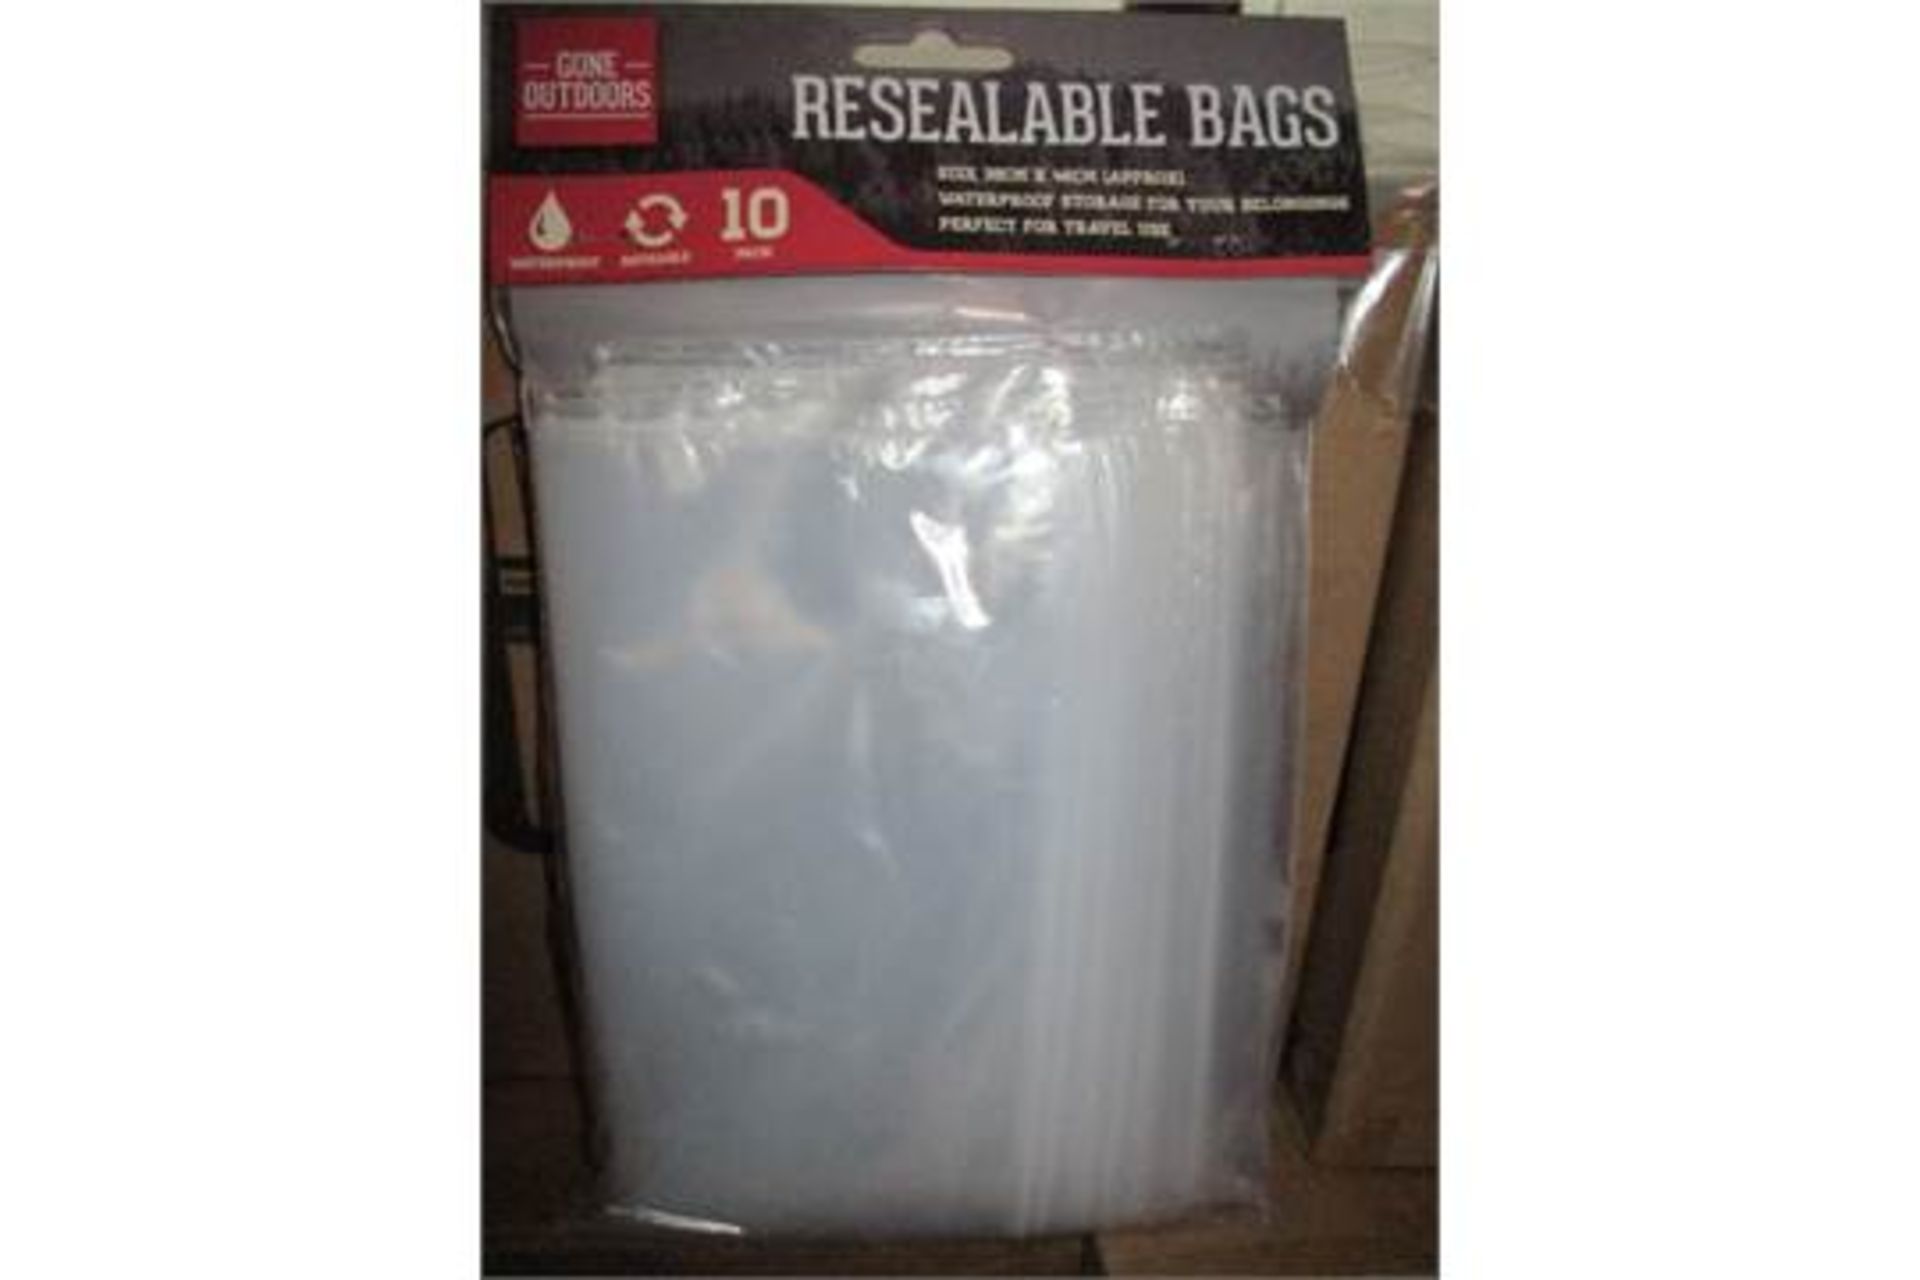 10. cartons BOYZ TOYZ resealable bags each carton containing 12 packsÊ(each pack contains 10 bags)